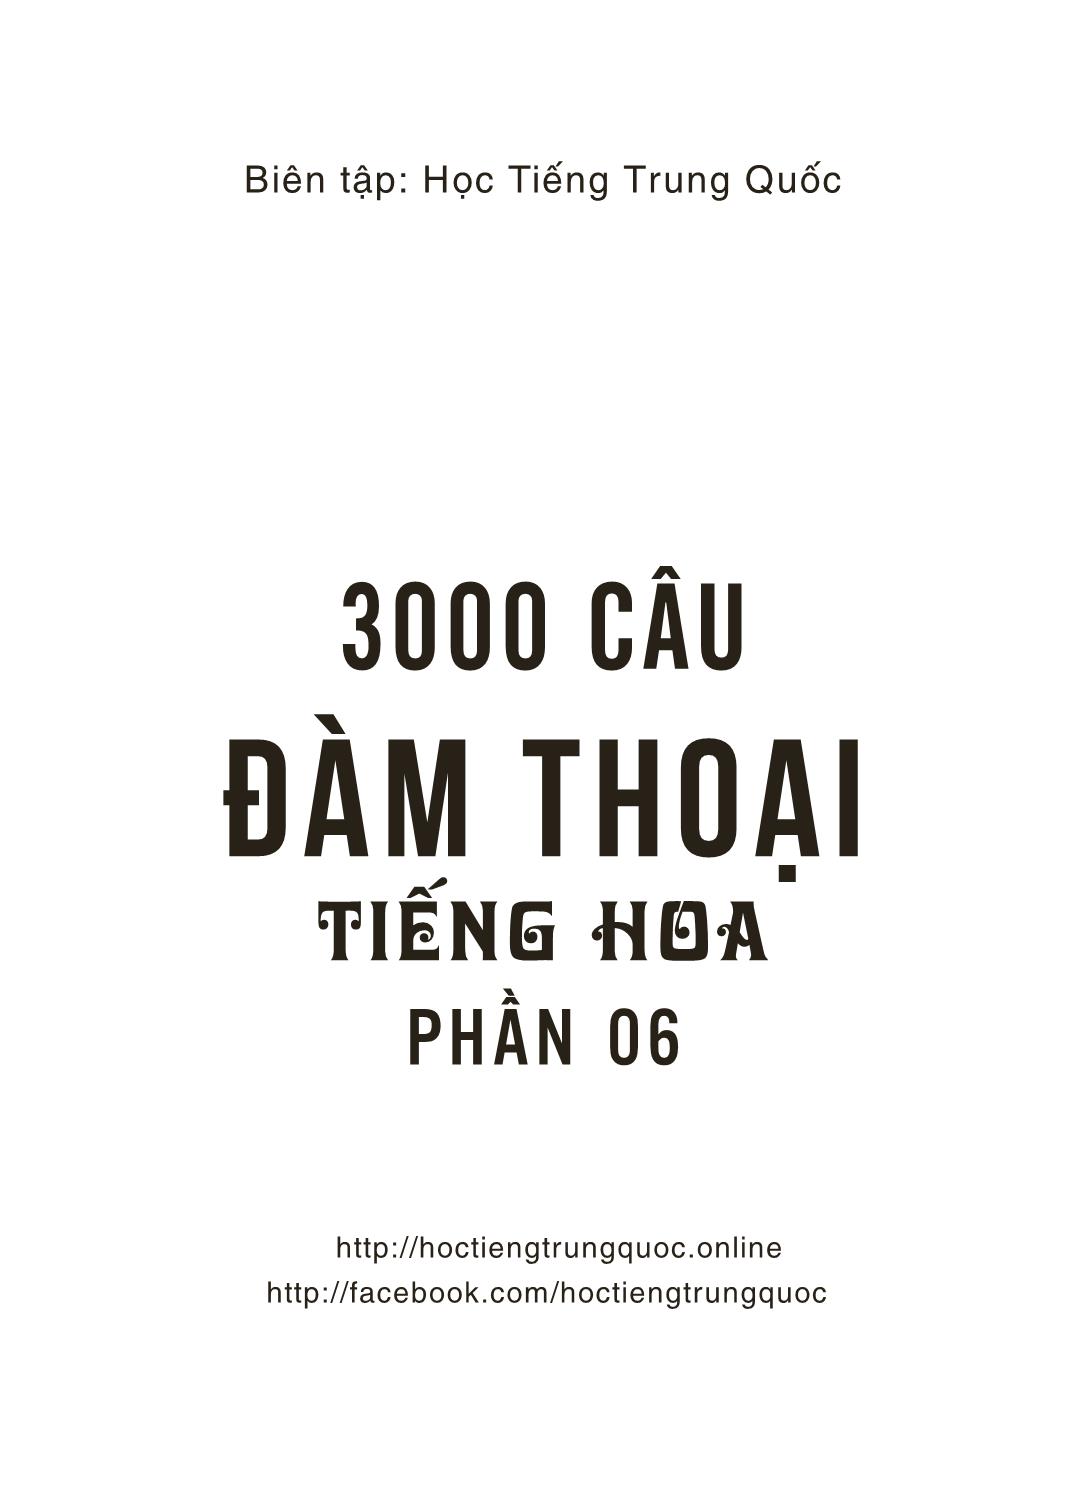 3000 Câu đàm thoại tiếng Hoa - Phần 6 trang 2